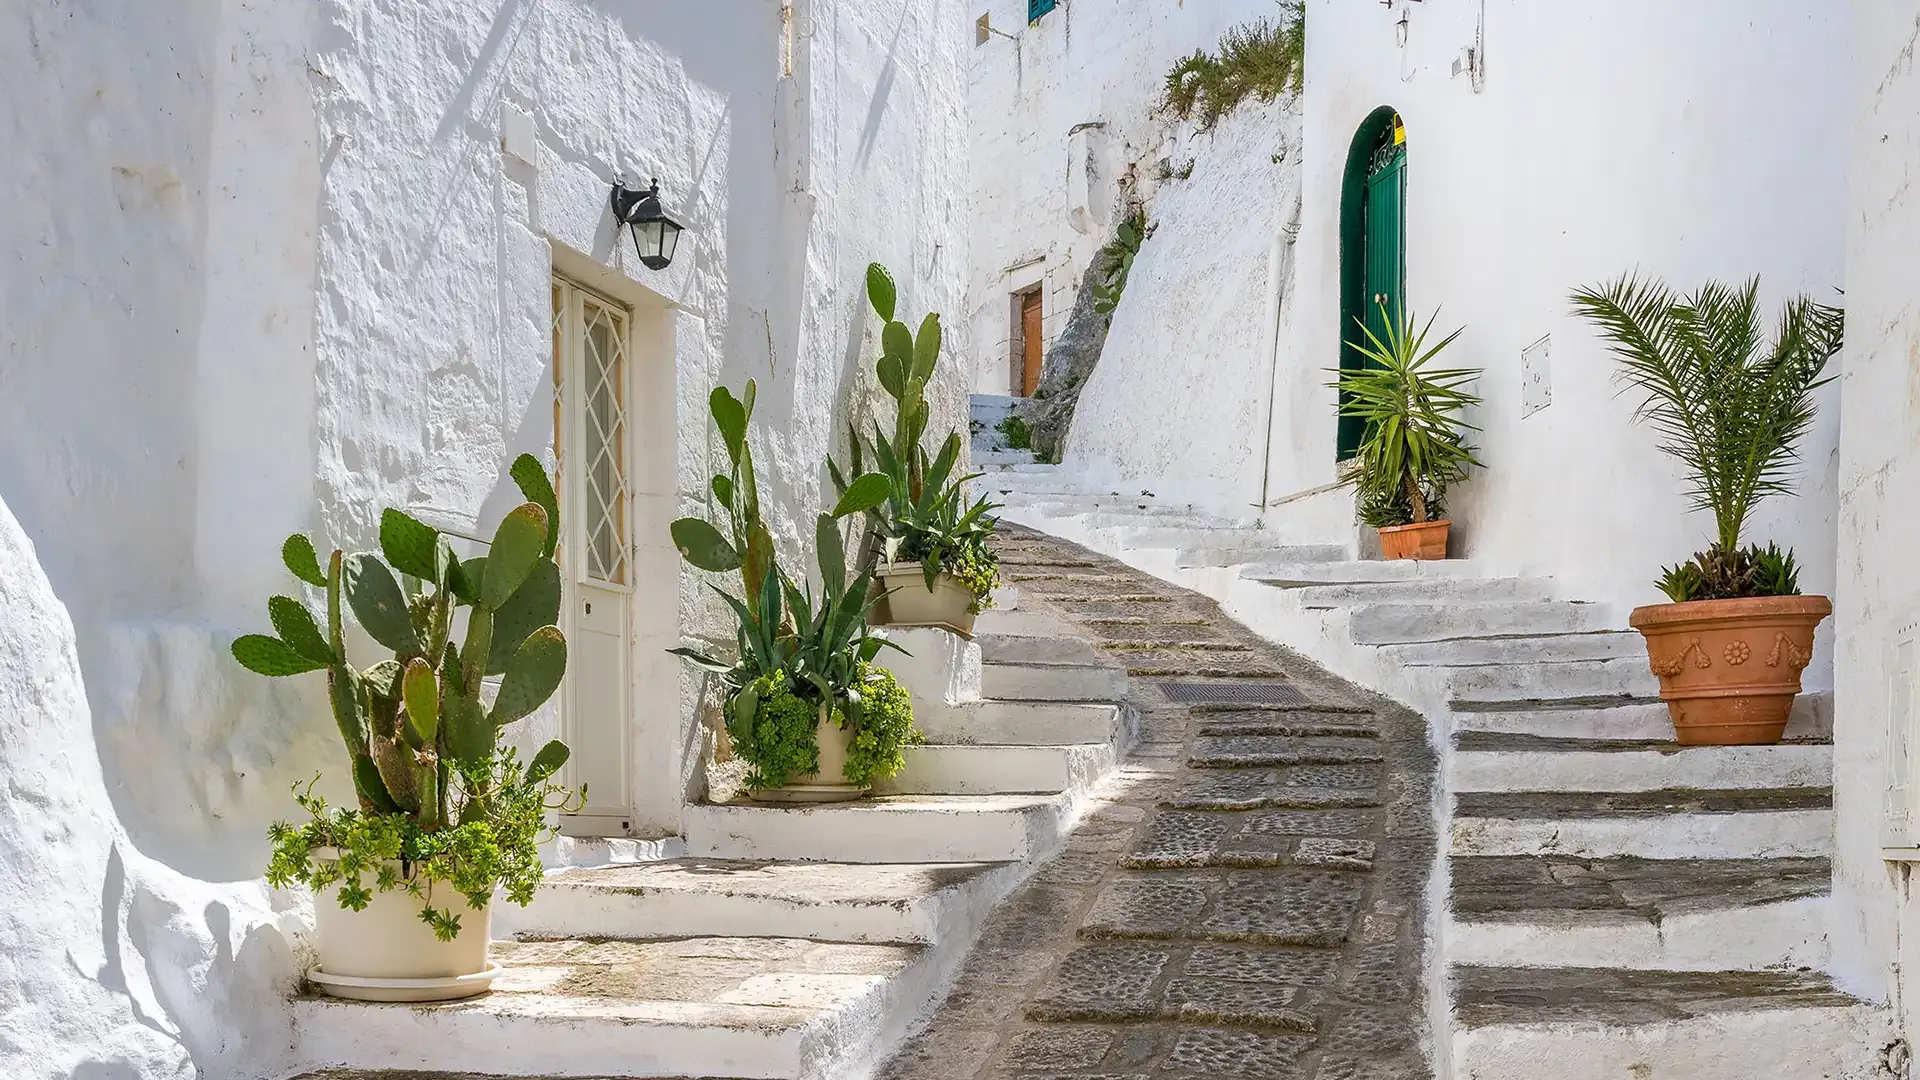 Ruelle blanche avec escaliers et plantes en pot dans un village méditerranéen.